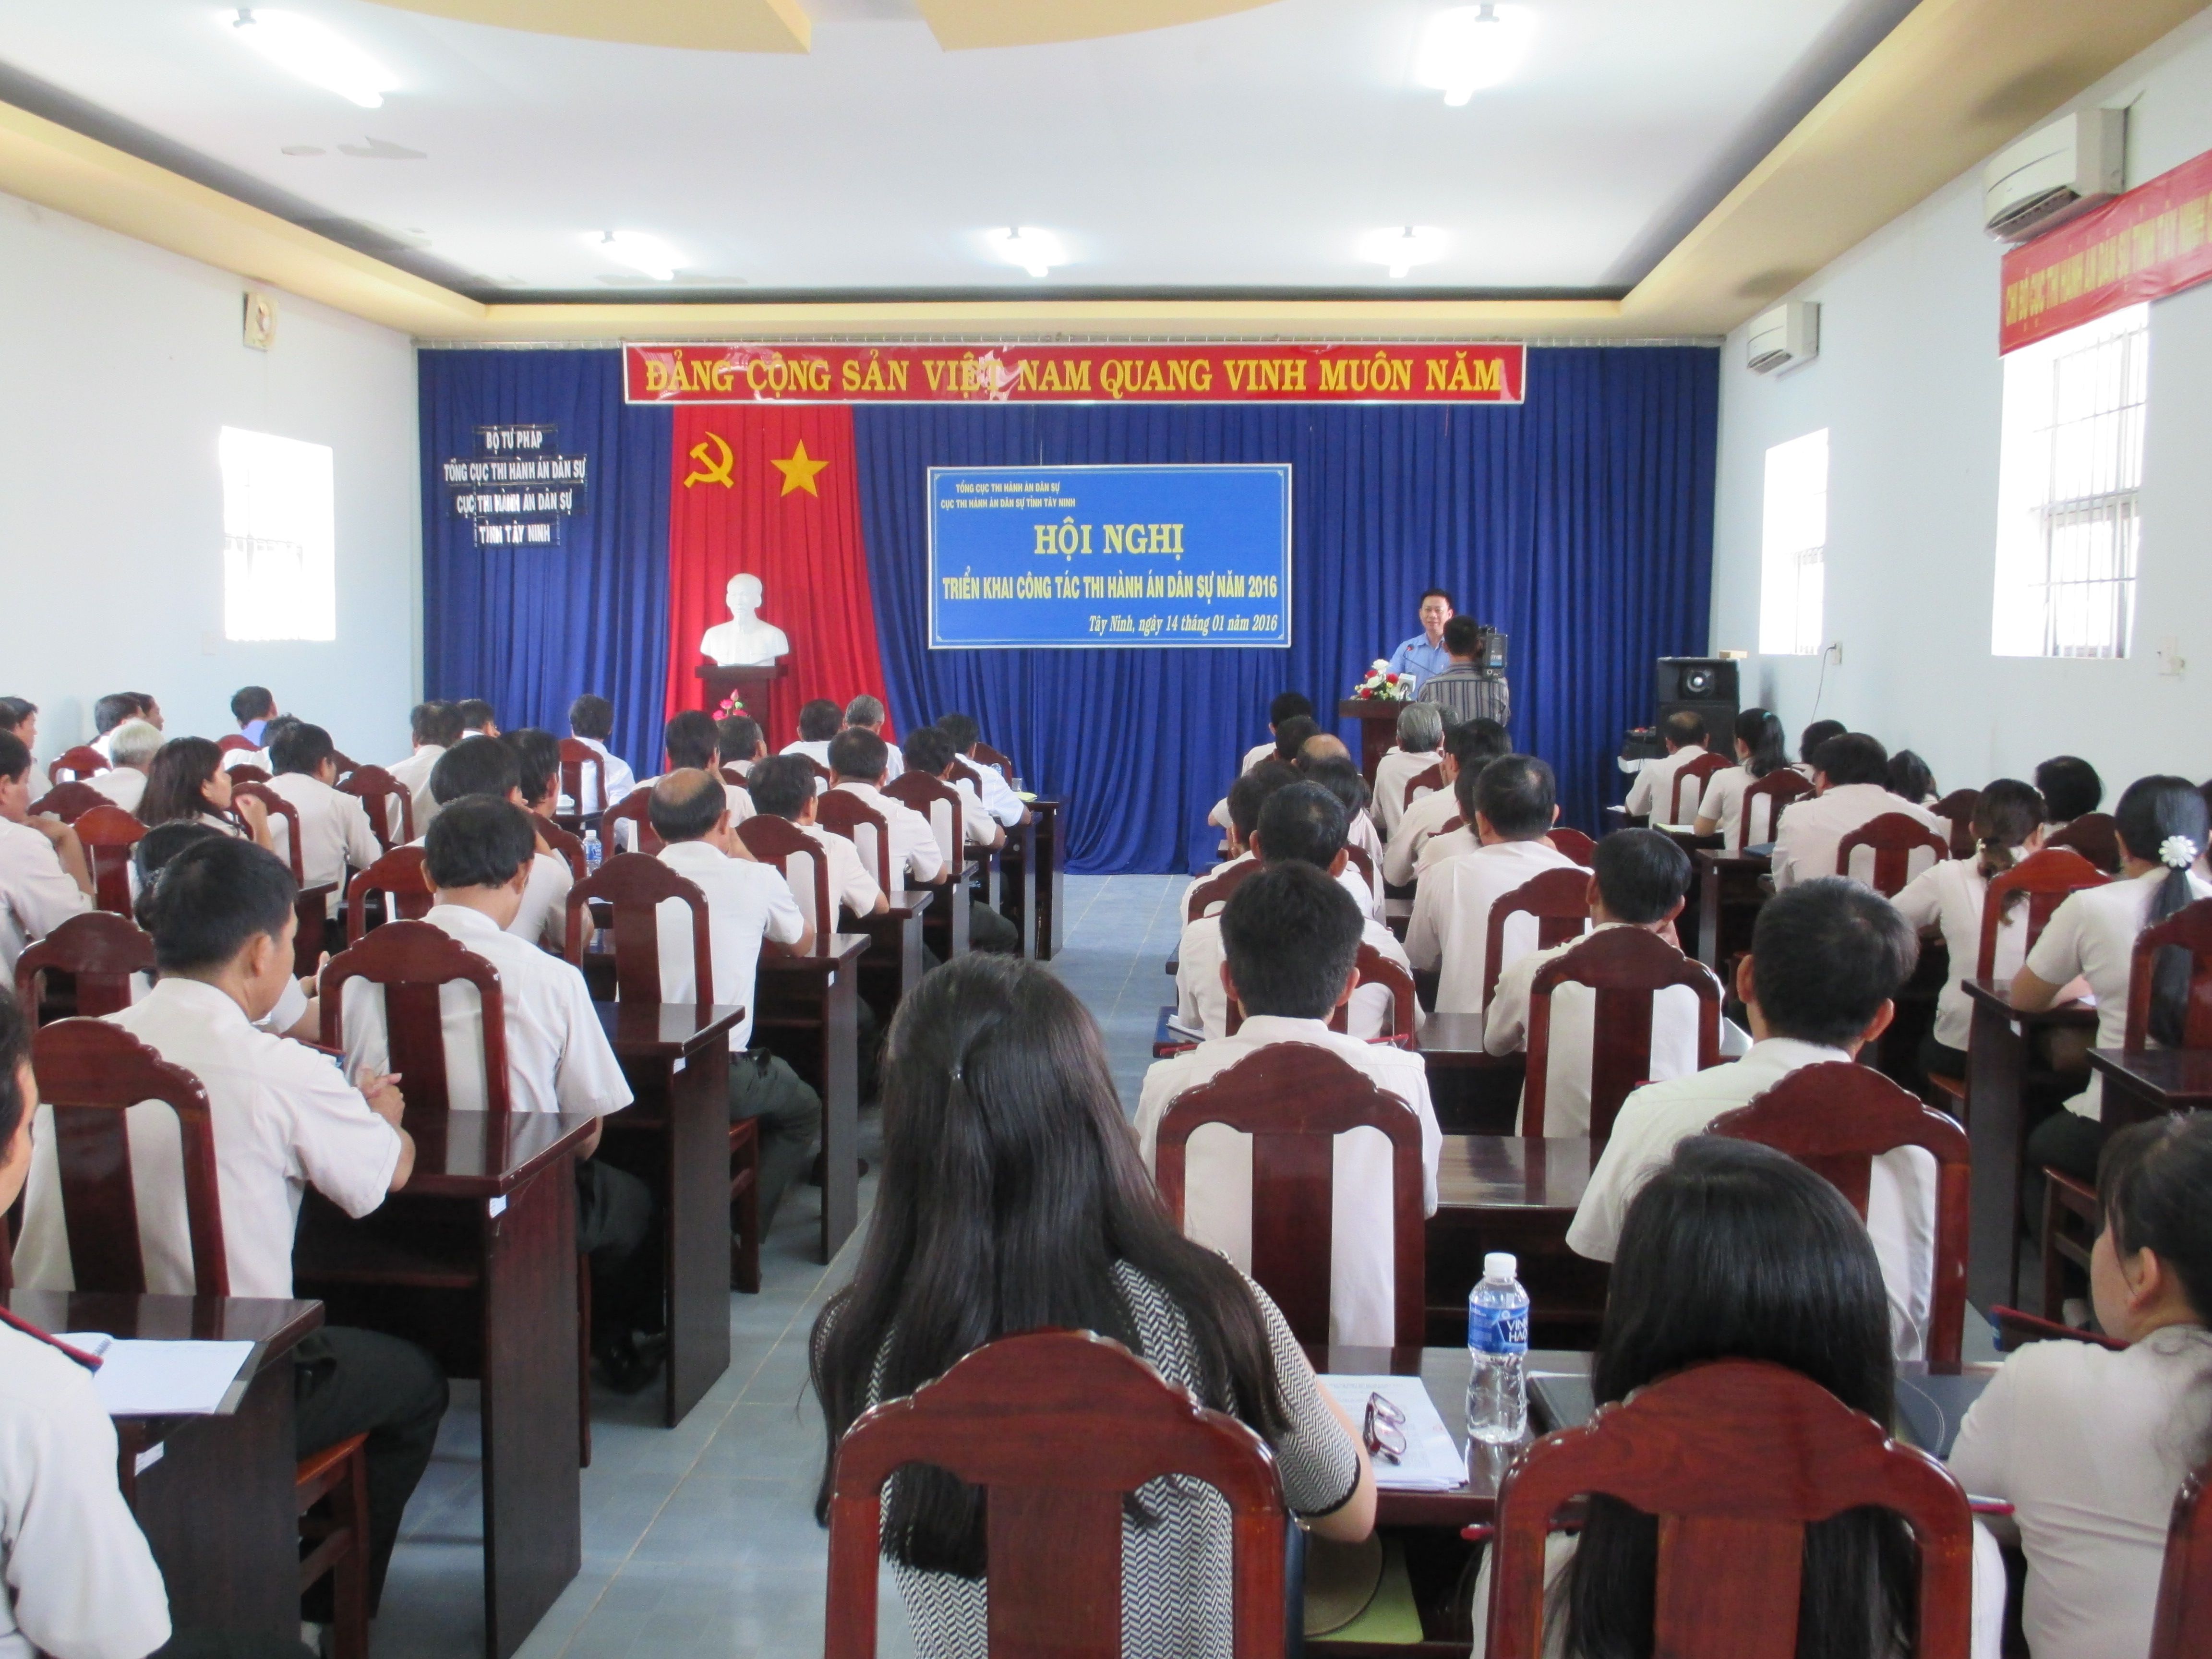 Cục Thi hành án dân sự tỉnh Tây Ninh tổ chức Hội nghị triển khai công tác năm 2016